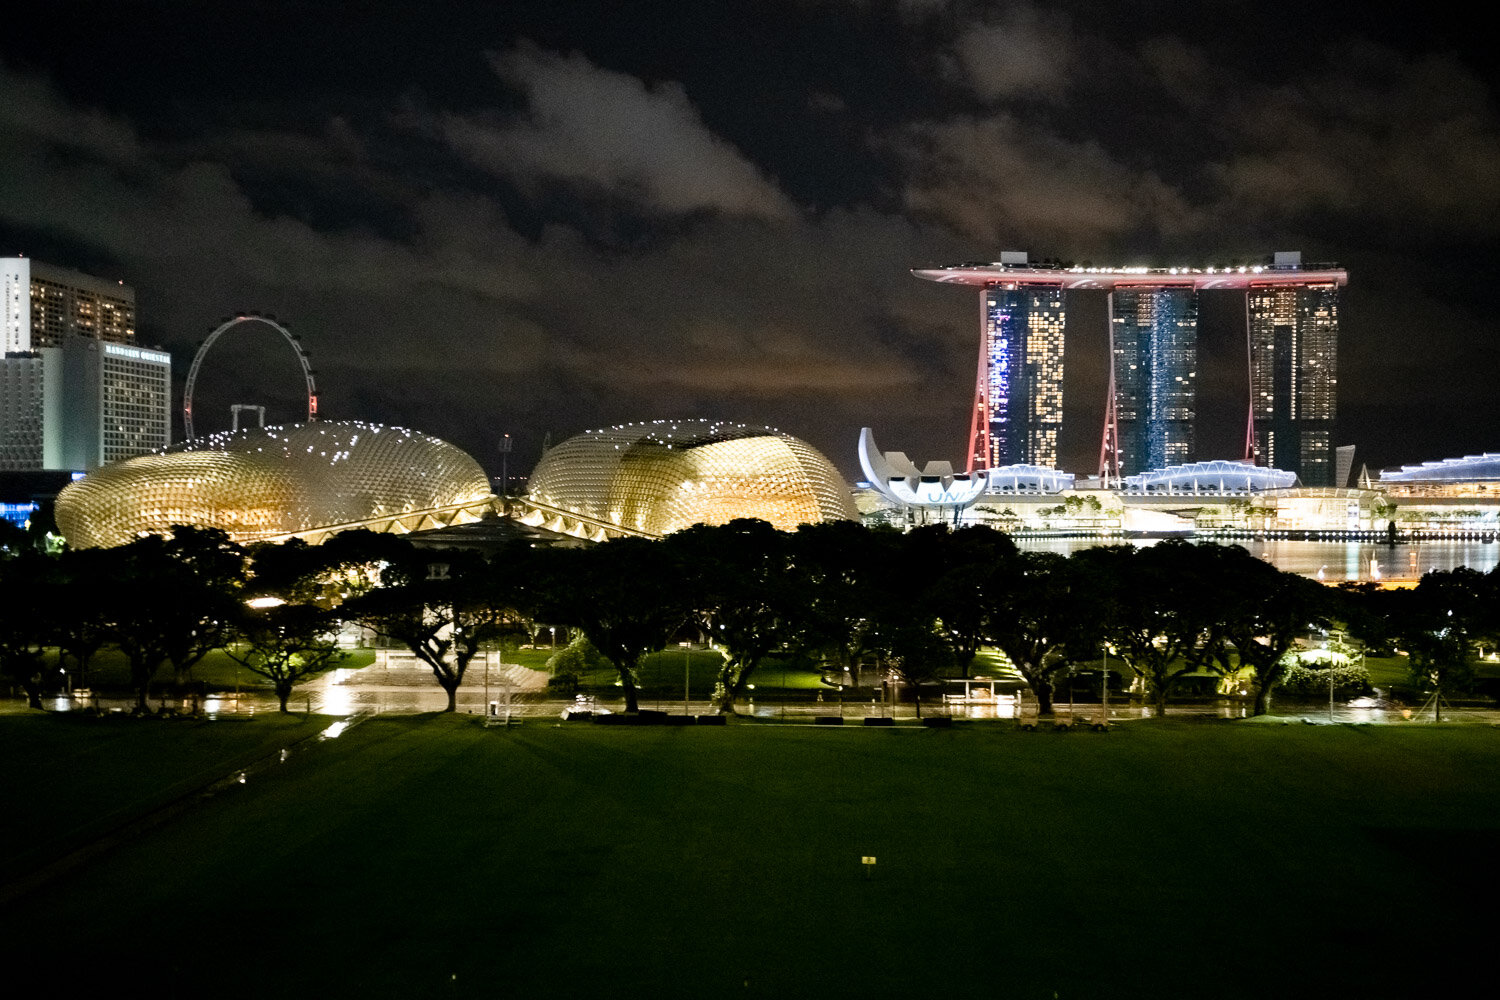 Singapurs Skyline: Das Mandarin Oriental (mit dem Herz), der Singapore Flyer (Riesenrad), die Oper (Gold), das ArtScience Museum (Lotusblume), das Marina Bay Sands und der Singapore River.